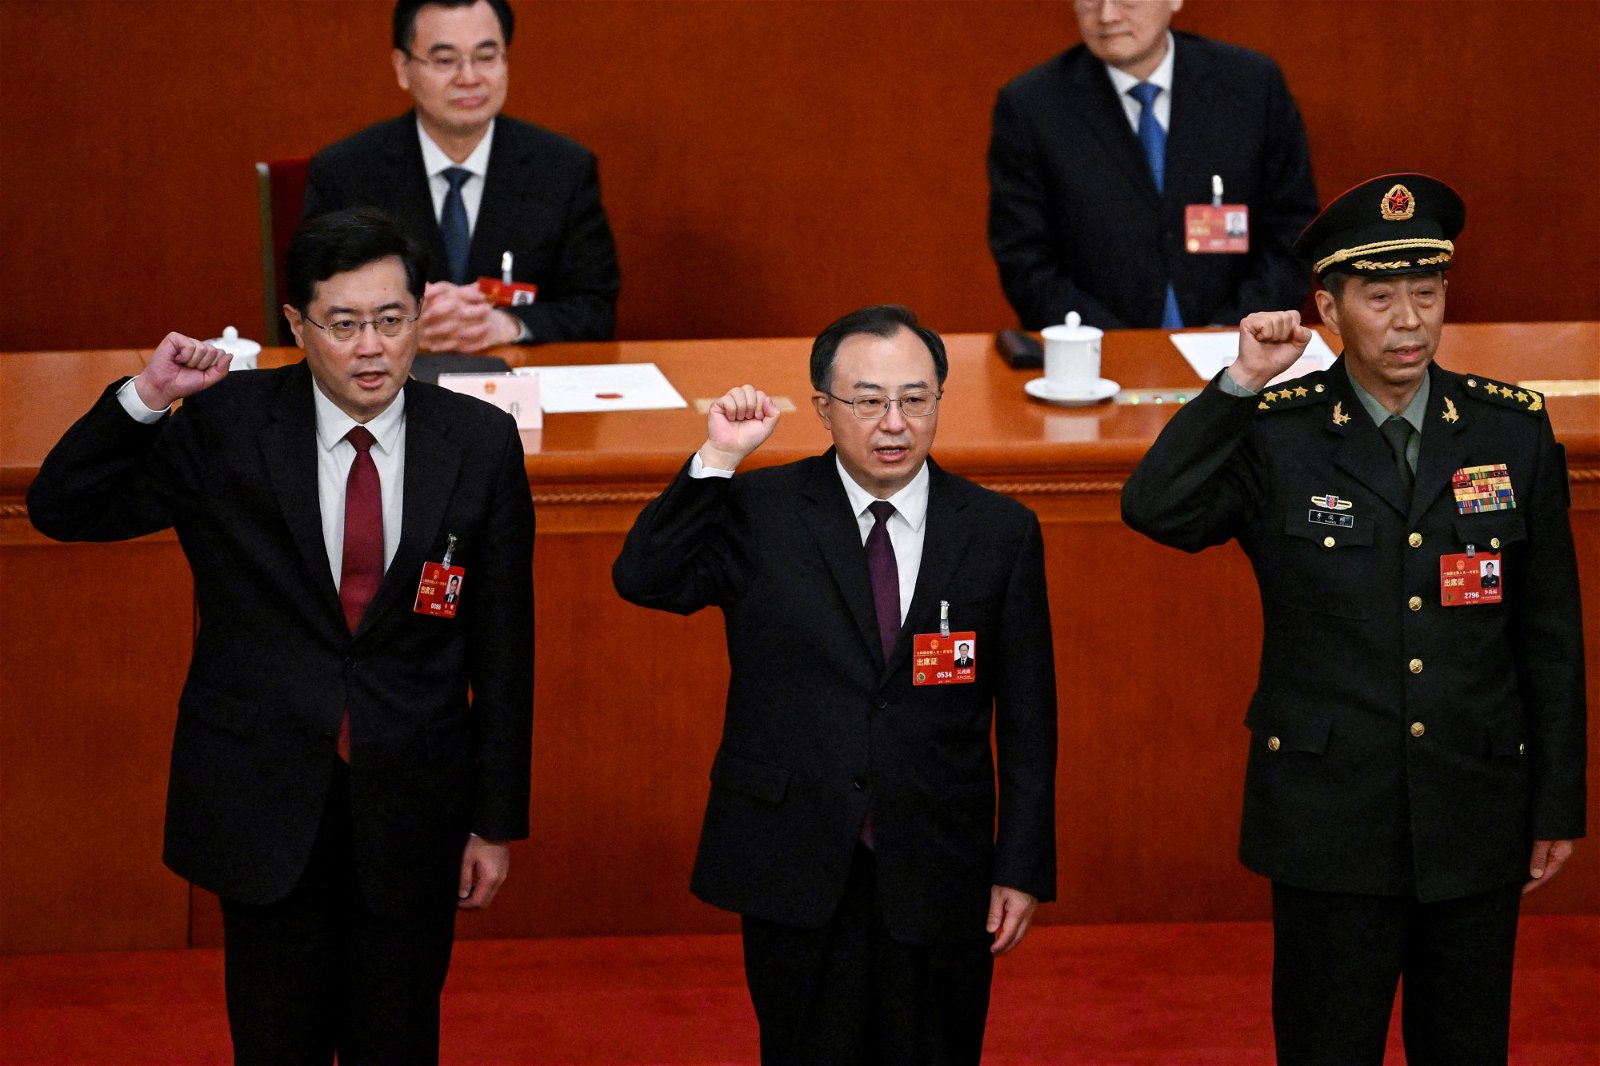 李尚福被免去國務委員及國防部長職務 當局未公布接任人選 | Now 新聞